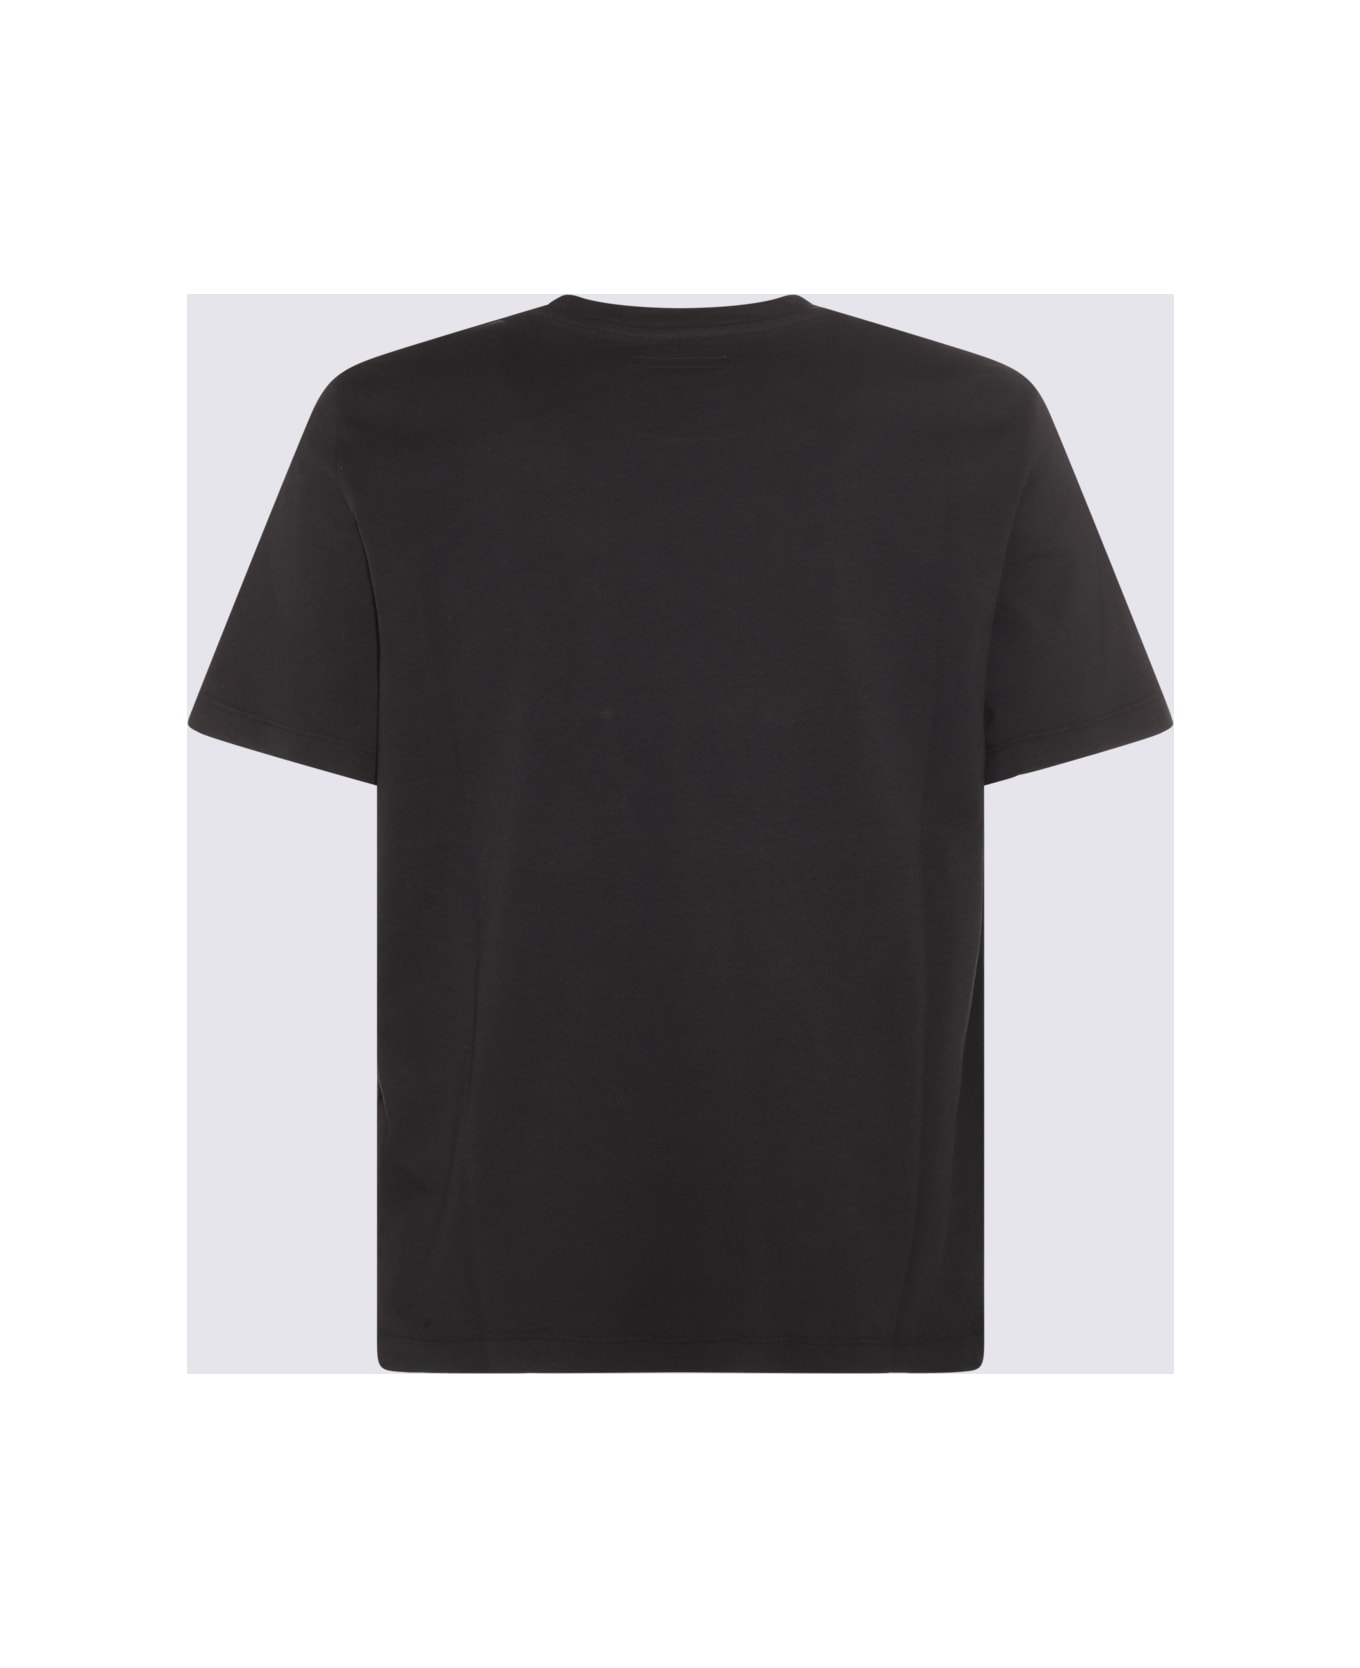 Jacob Cohen Black Cotton T-shirt - Black